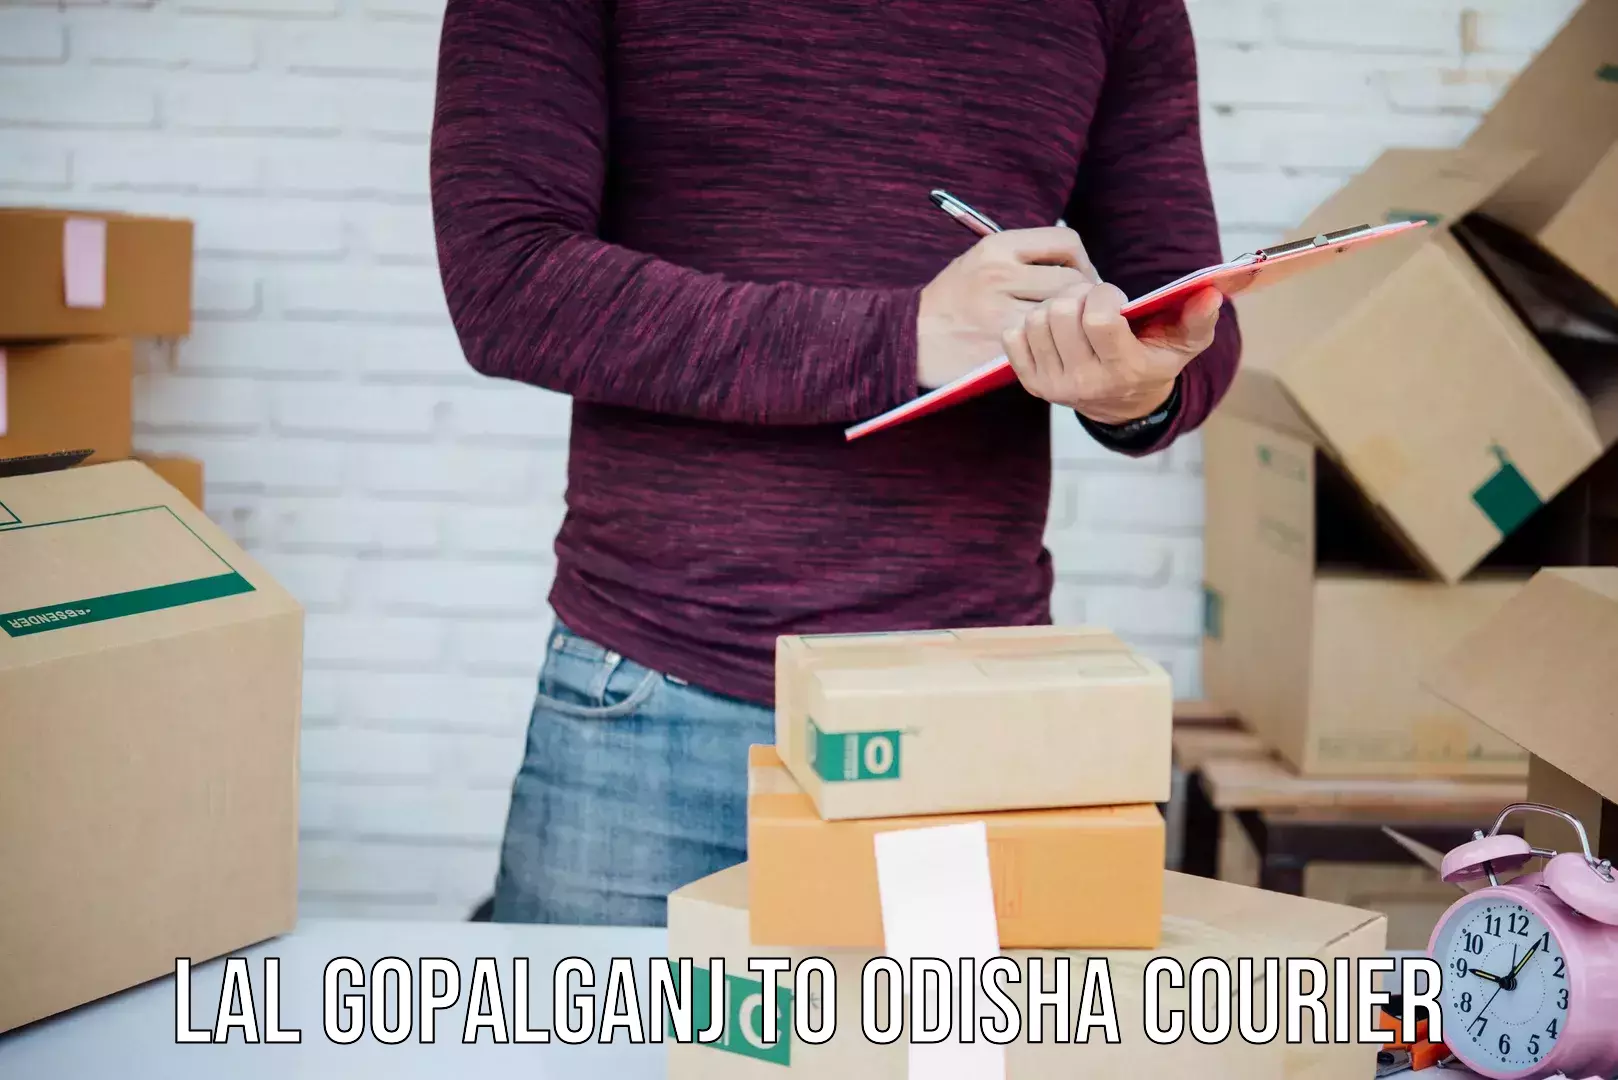 Affordable shipping rates Lal Gopalganj to Odisha